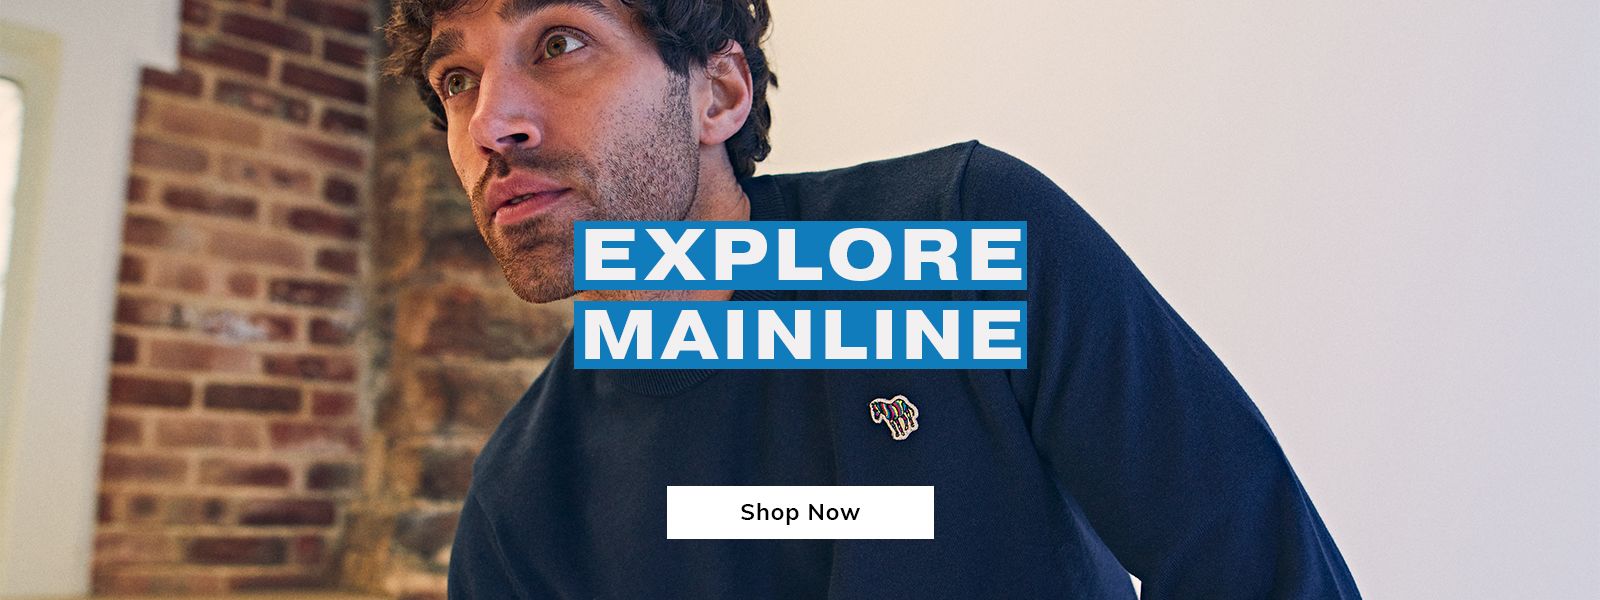 Explore Mainline - Shop Now